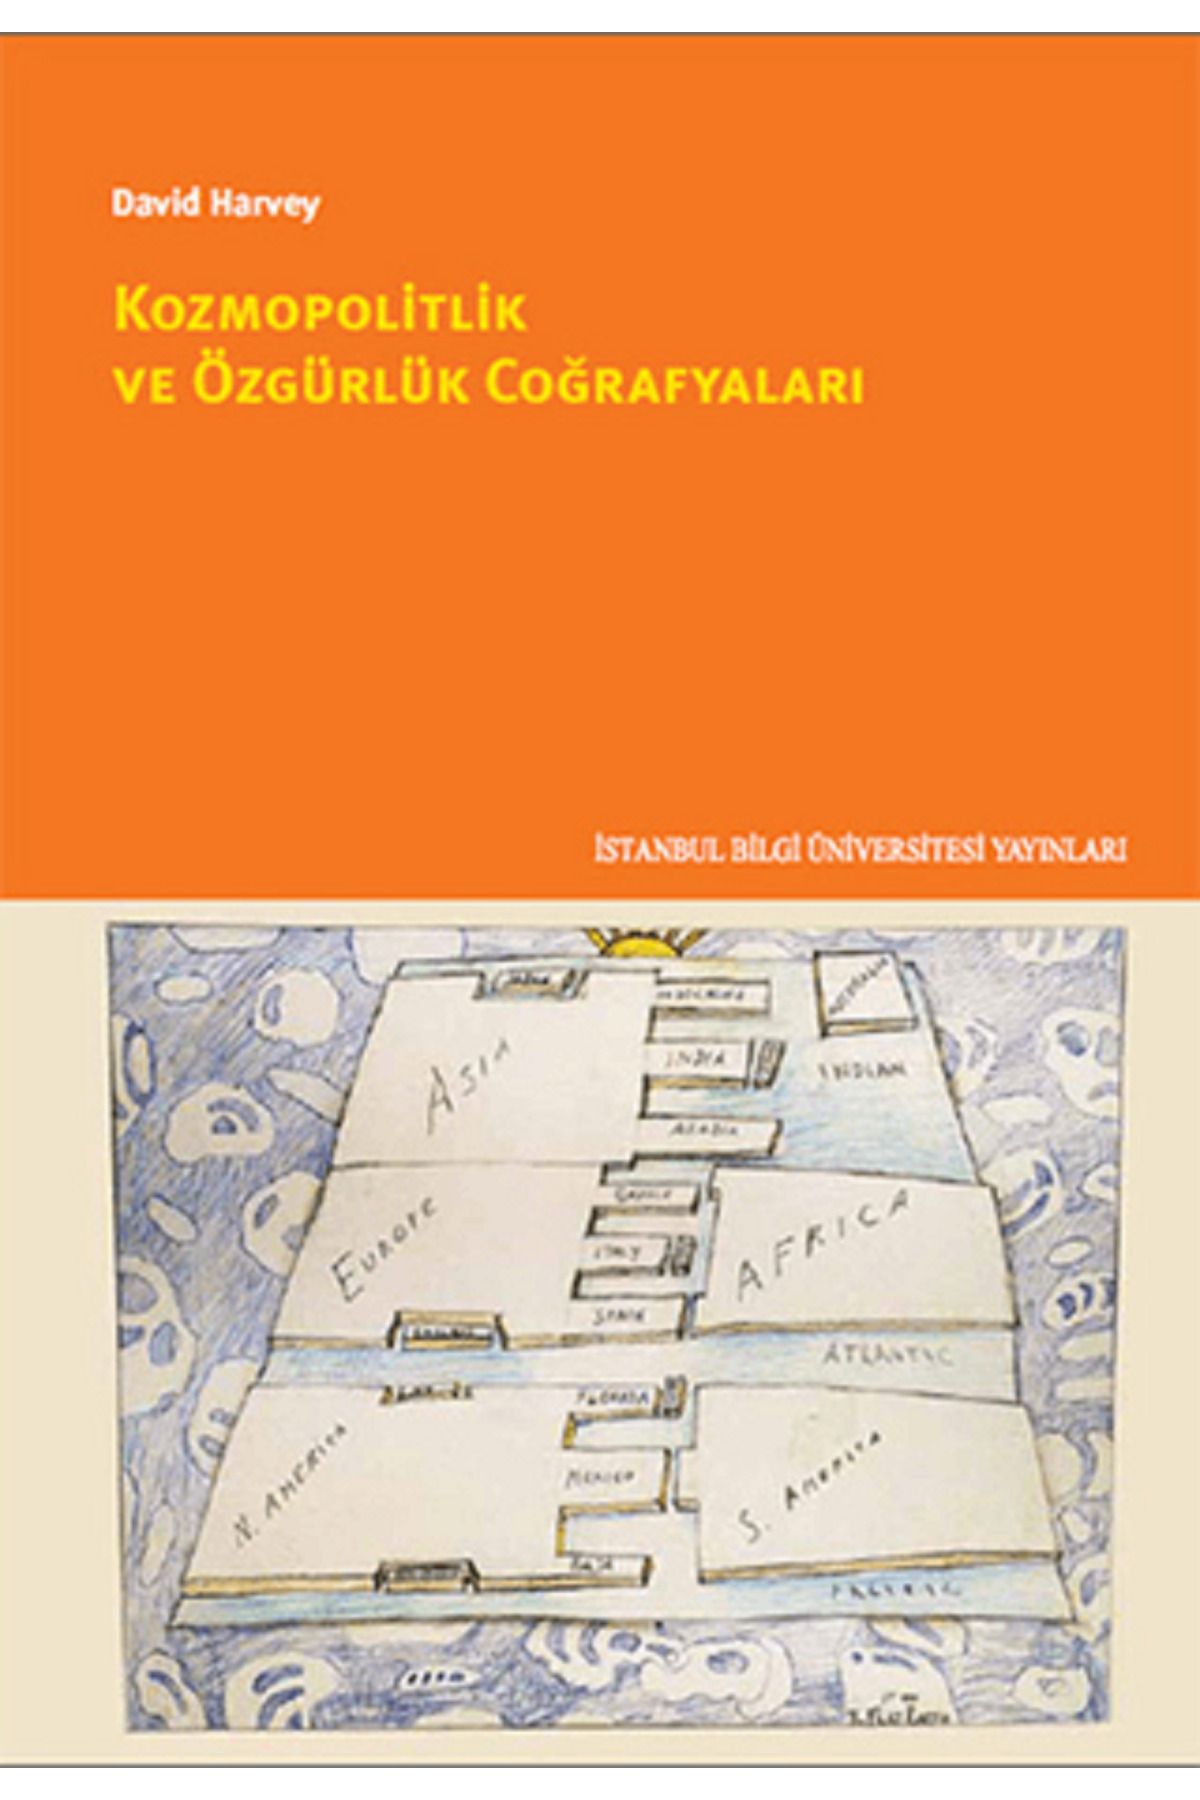 İstanbul Bilgi Üniversitesi Yayınları Kozmopolitlik ve Özgürlük Coğrafyaları - David Harvey